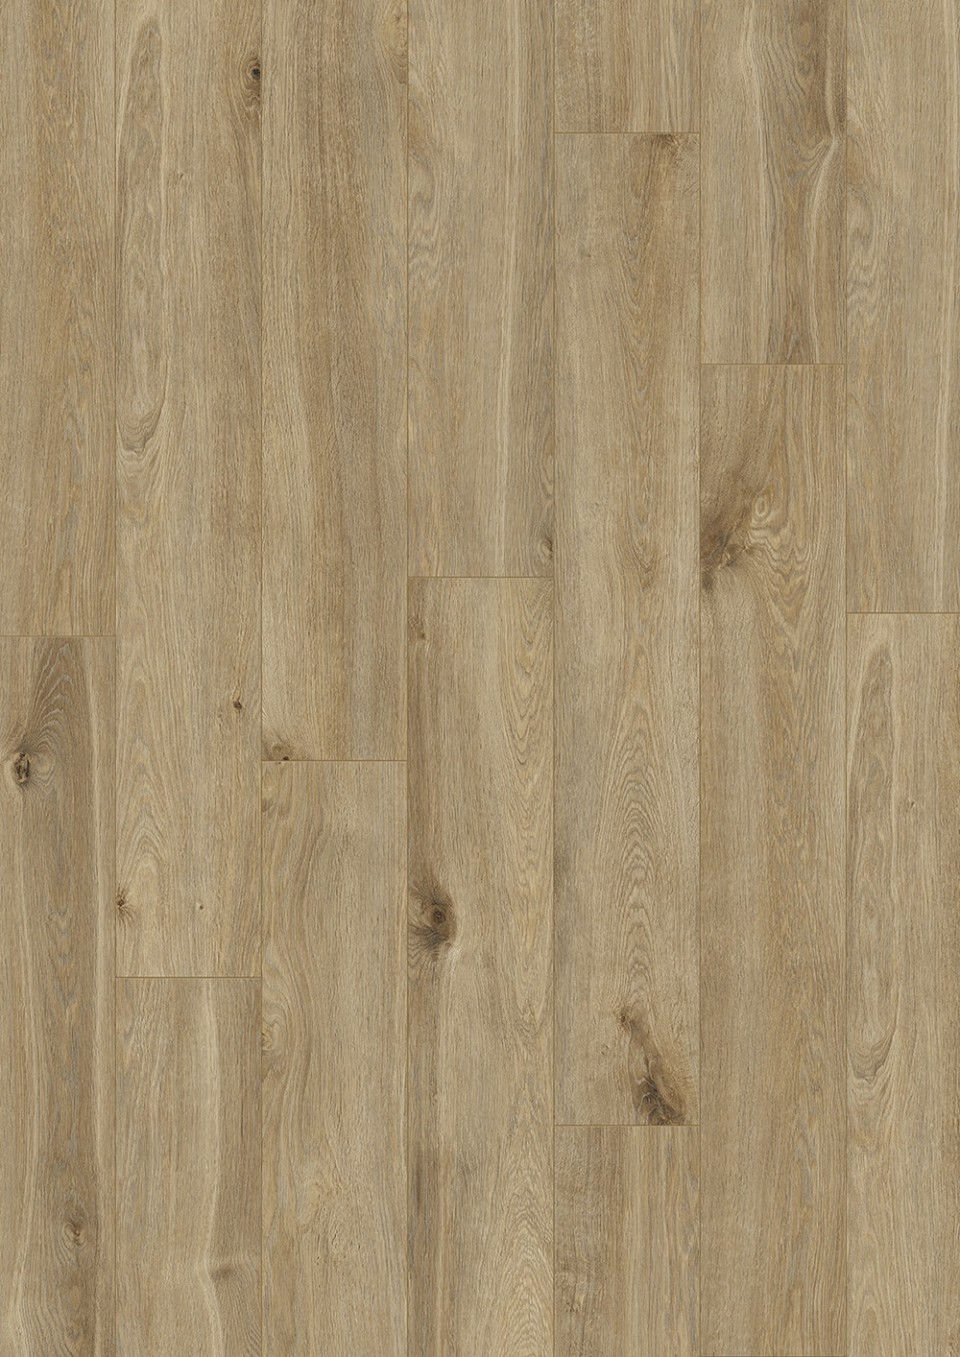 Alpod Floor Expert BINPRO-1523/0 Laminlt padl, CLASSIC AQUA, 1523 oak mayan, 8 mm, 1 svos